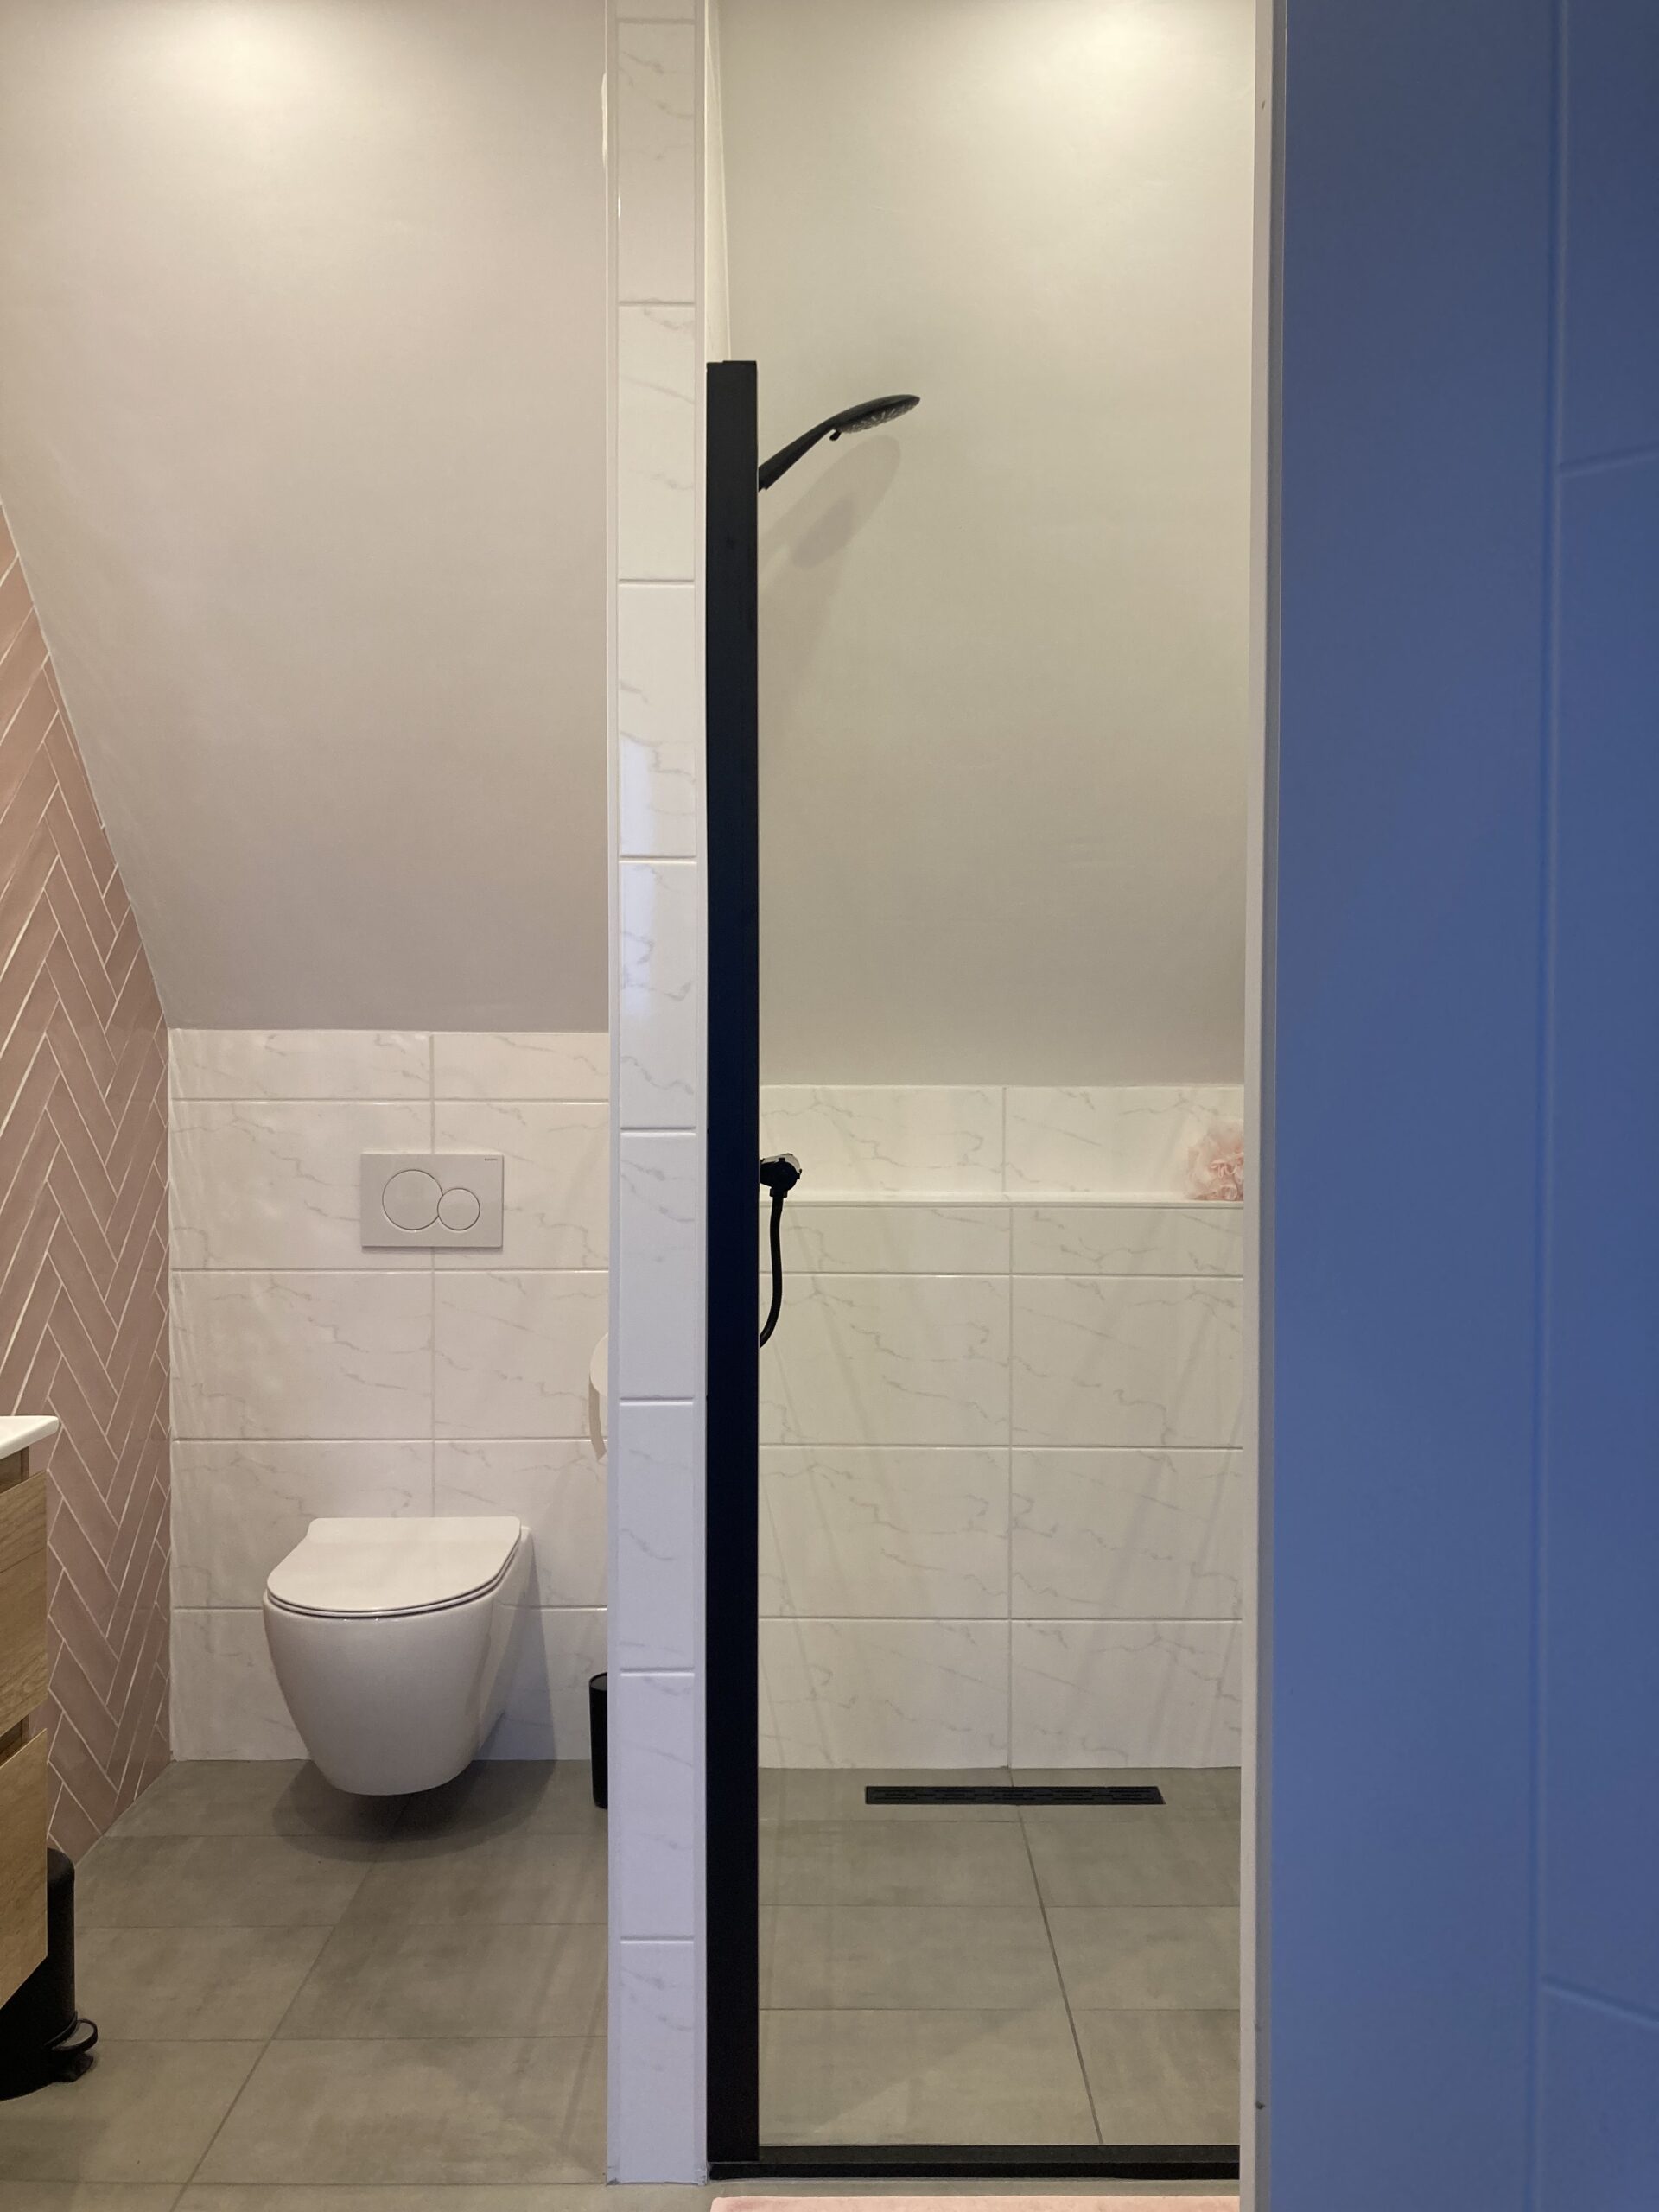 zolderbadkamer schuine wanden toilet en douchehoek en visgraattegels